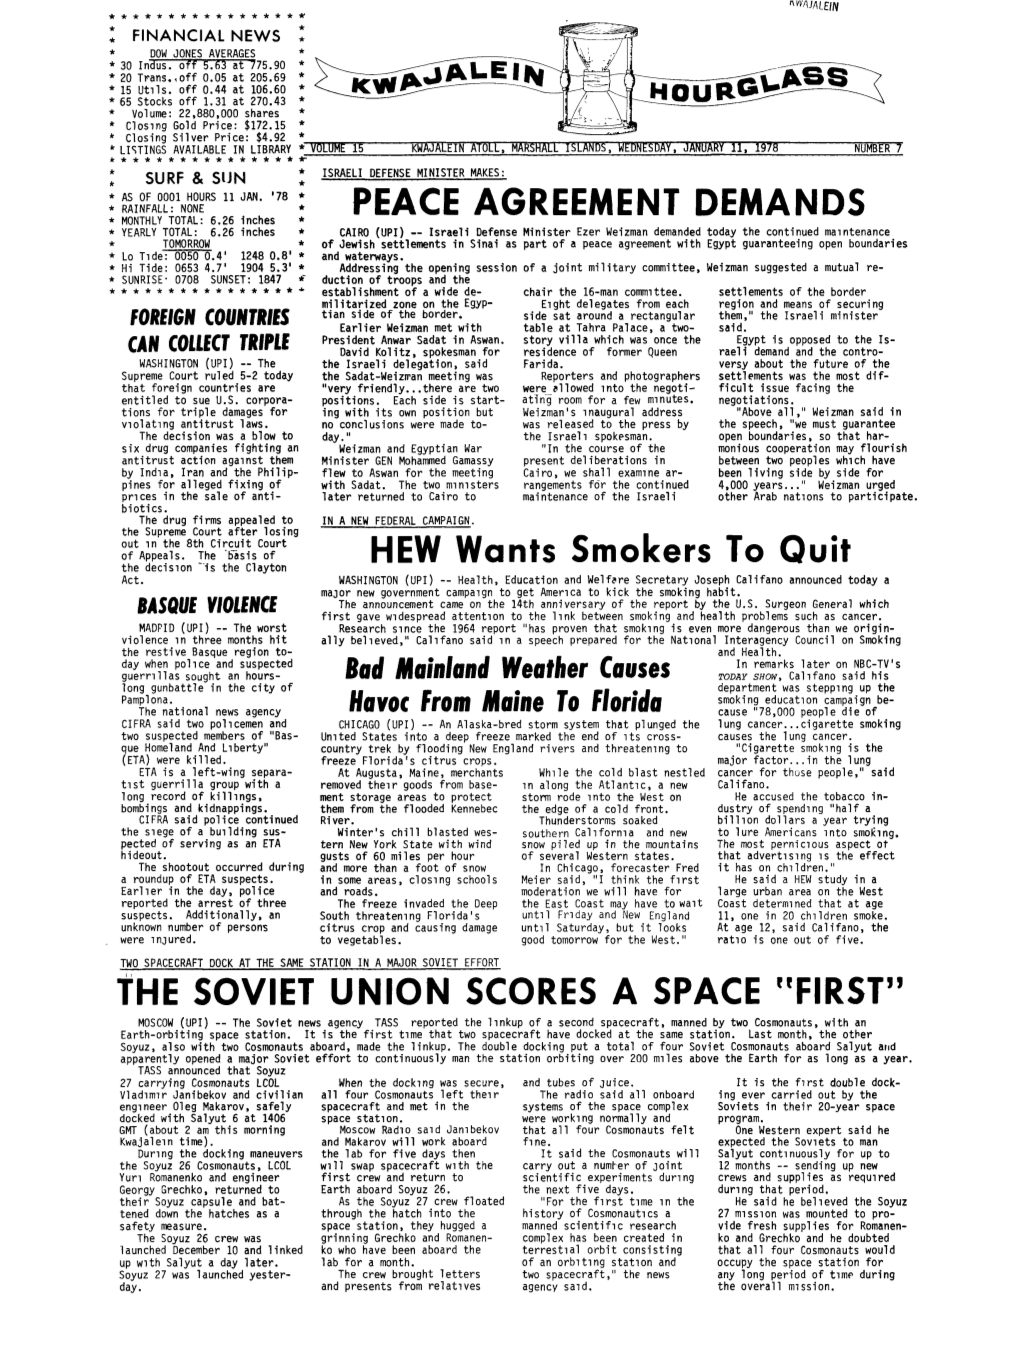 PEACE AGREEMENT DEMANDS the SOVIET UNION SCORES A